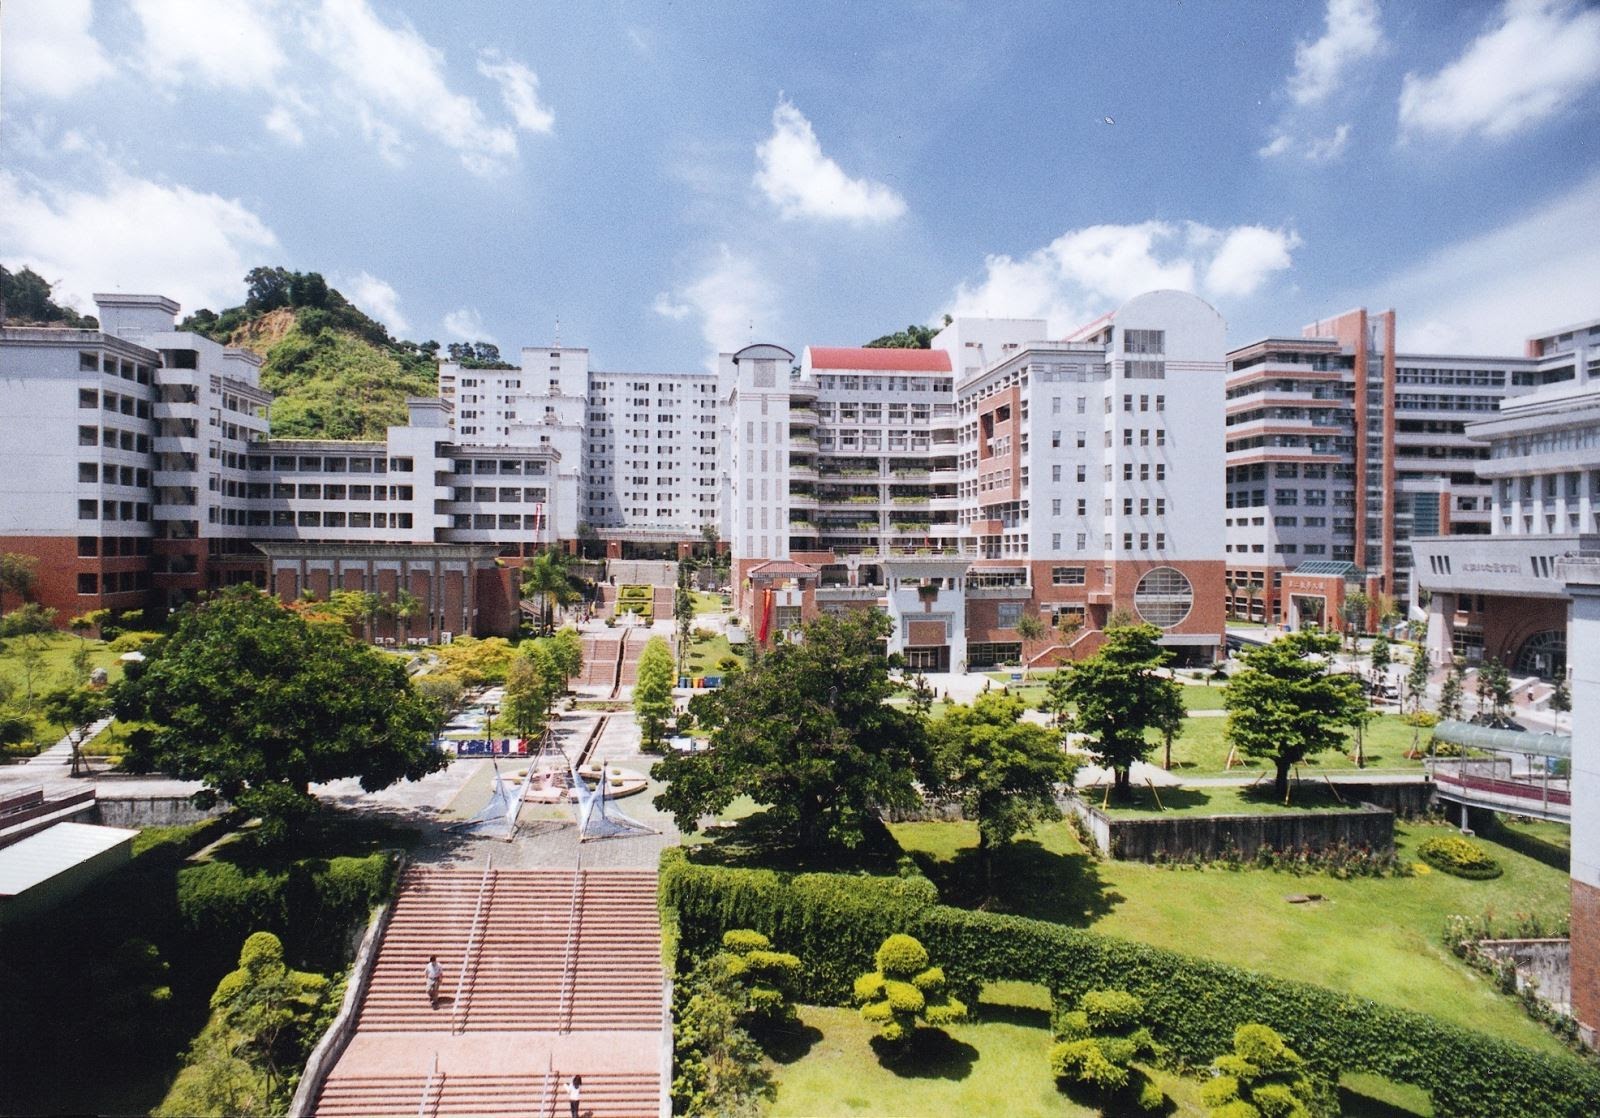 Trường Đại học Gwangju - Điểm đến tháng 12 của các bạn du học sinh -  duhocbgc